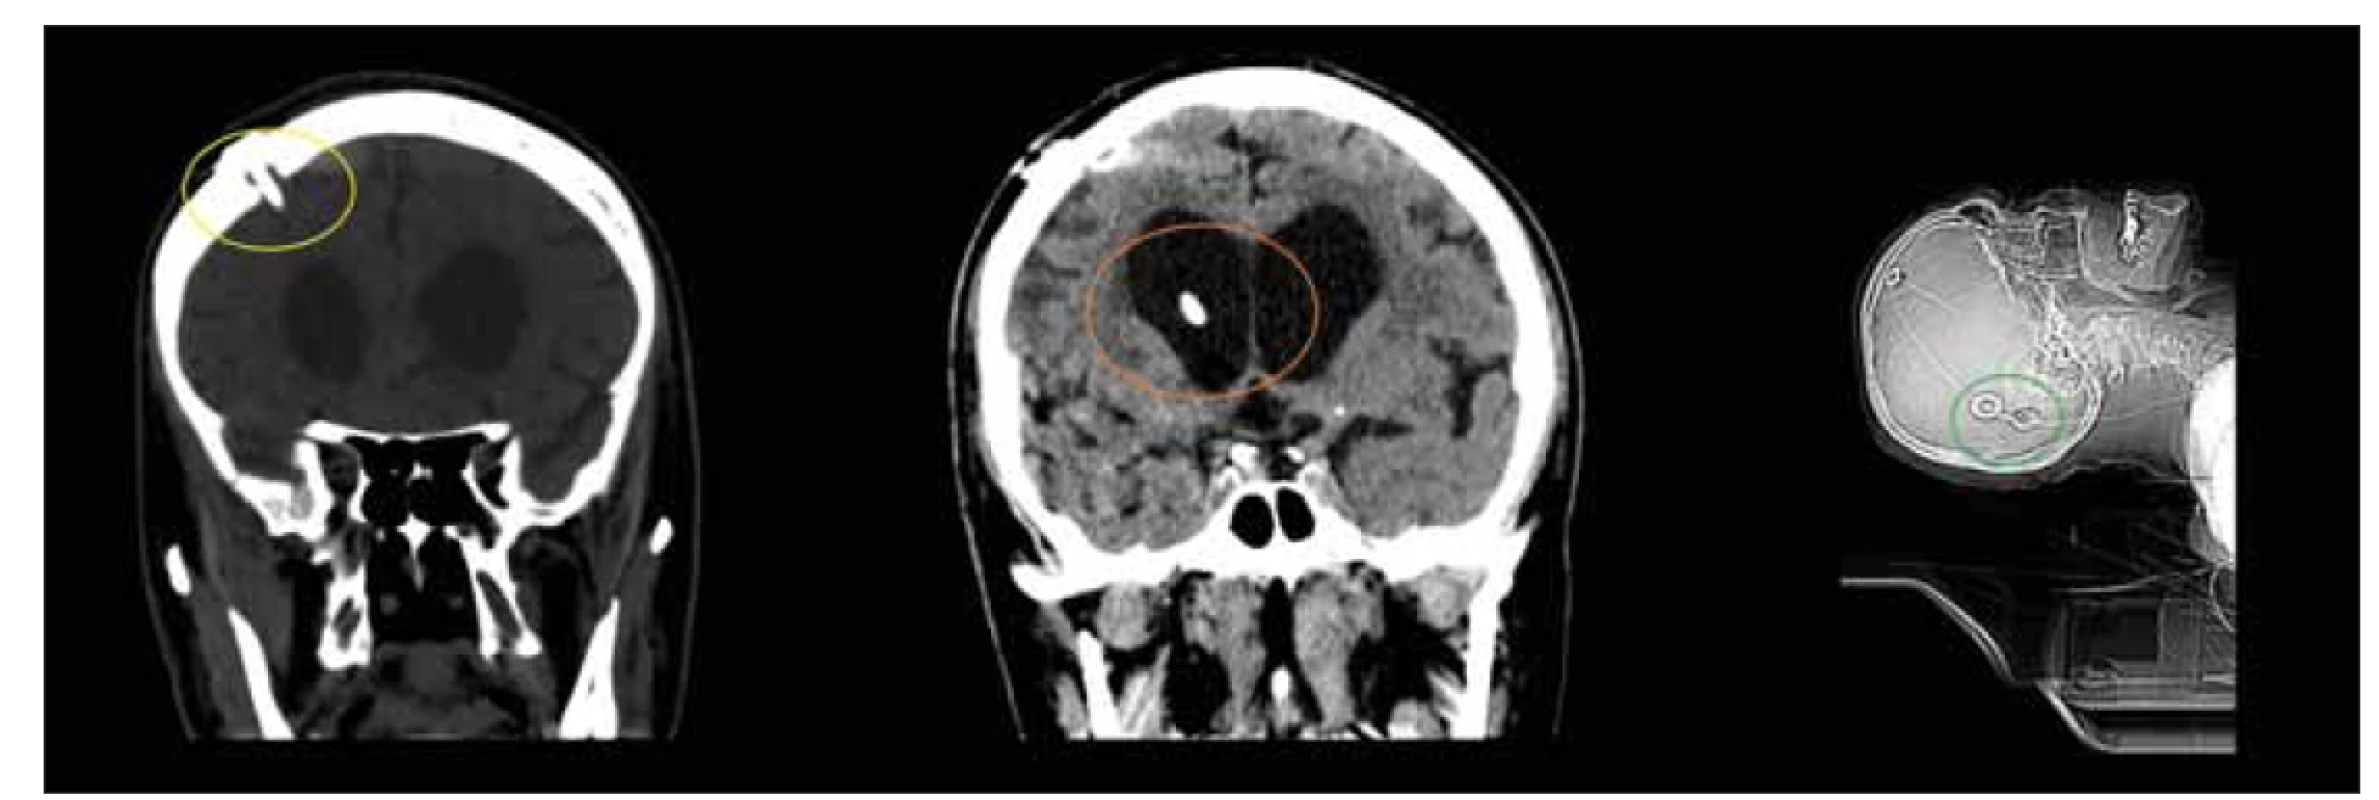 CT, frontální a sagitální rovina. Pacient den po implantaci ventrikuloperitoneálního zkratu. Povšimněte si pozice návrtu (žlutý
kruh) a ventrikulárního katétru (oranžový kruh) při implantaci ventrikulárního katétru z Kocherova bodu. Důležité je dosáhnout paralelní
polohy s podélnou osou těla při implantaci gravitačních ventilů (zelený kruh).<br>
Fig. 9. CT, coronal and sagittal plane. Patient on the day after the implantation of ventriculoperitoneal shunt. Note the positions of the
burrhole (yellow circle) and ventricular catheter (orange circle) when implanting the ventricular catheter from the Kocher point. It is
important to achieve a position parallel to the longitudinal axis of the body when implanting gravity valves (green circle).